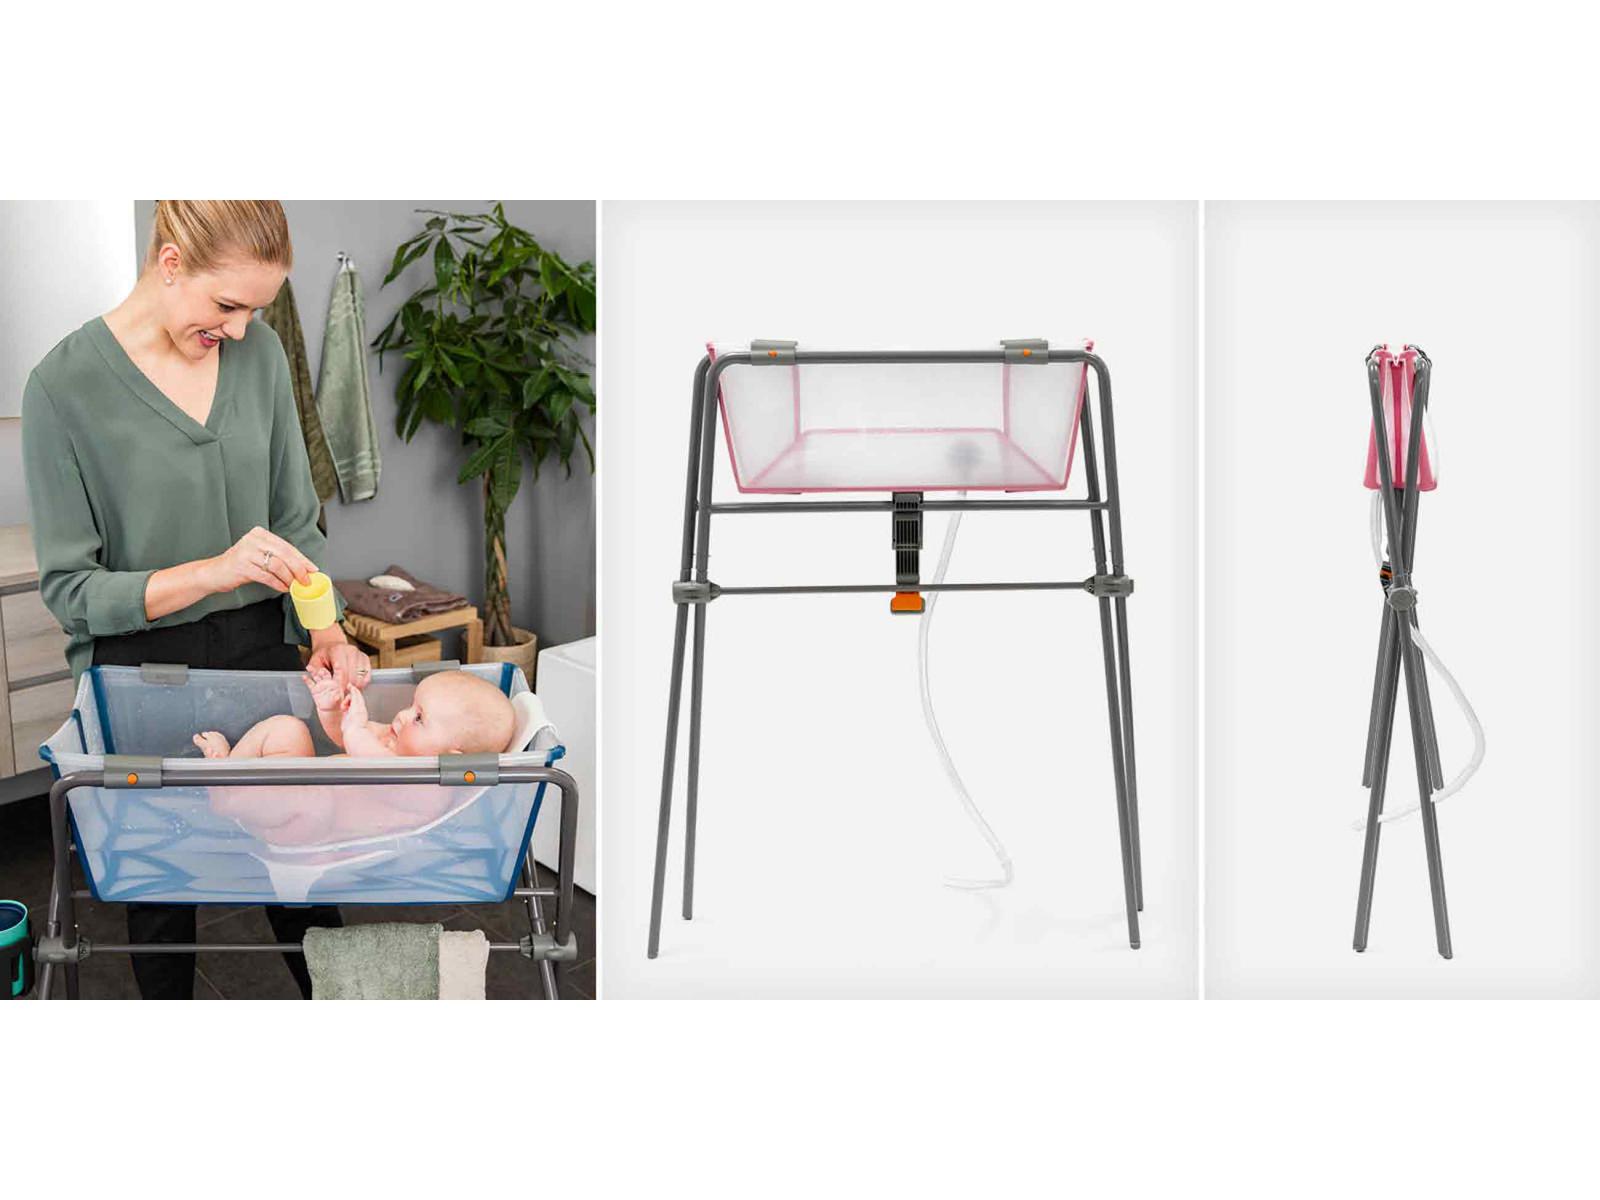 compatibles Repose-pieds pliable pour landau siège de sécurité pour enfants  accessoires de voiture support de pédale pour bébé support d'assistance